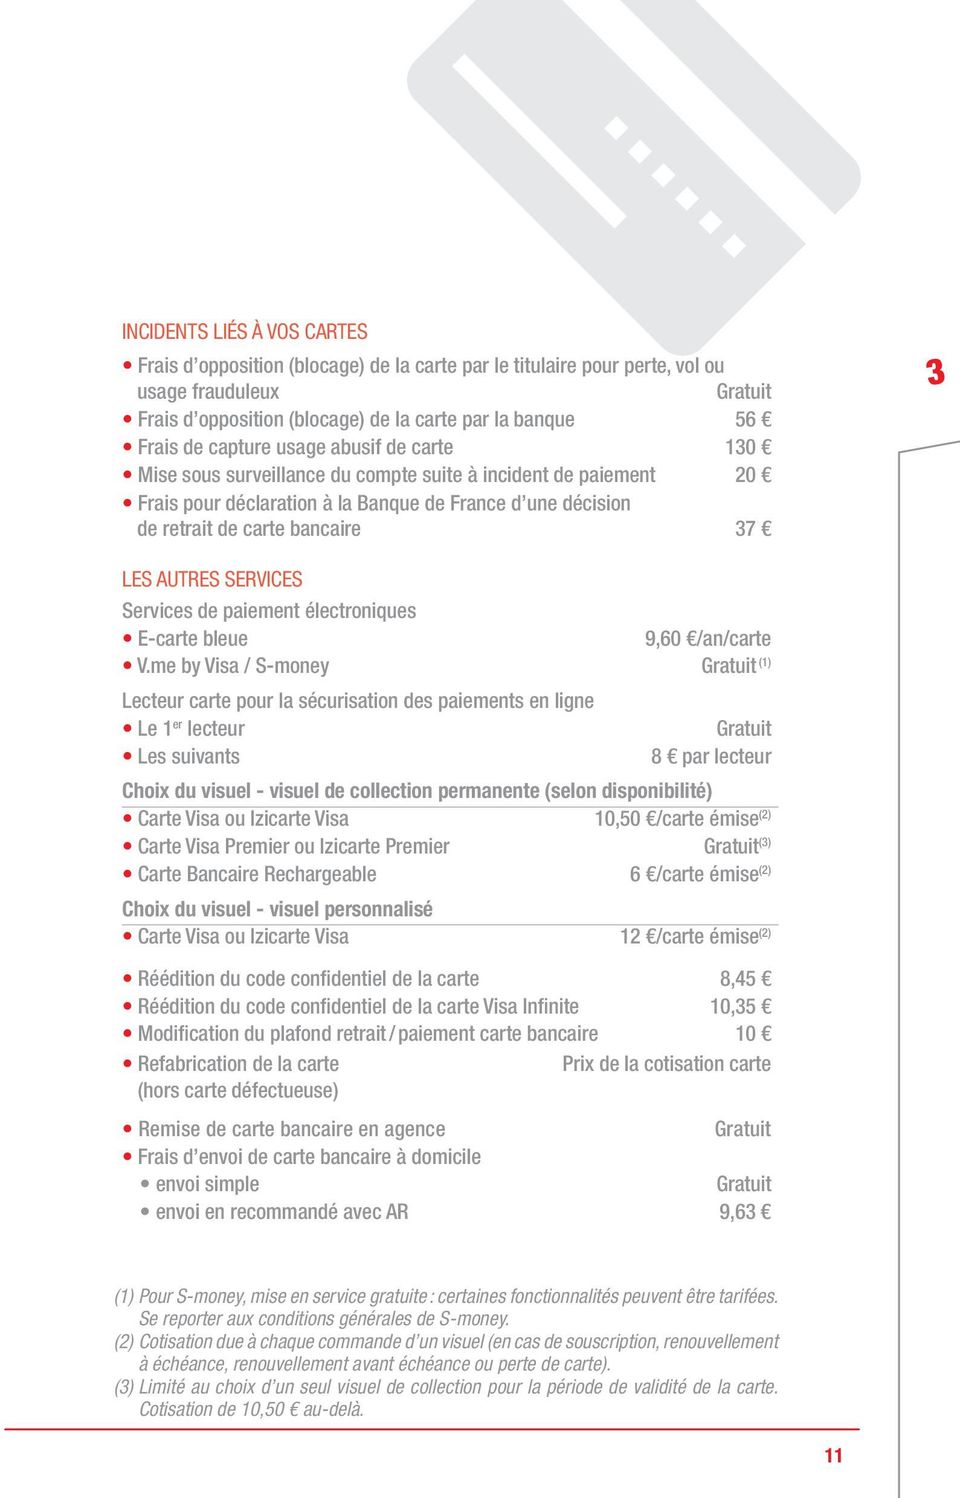 ServiCeS Services de paiement électroniques E-carte bleue 9,60 /an/carte V.